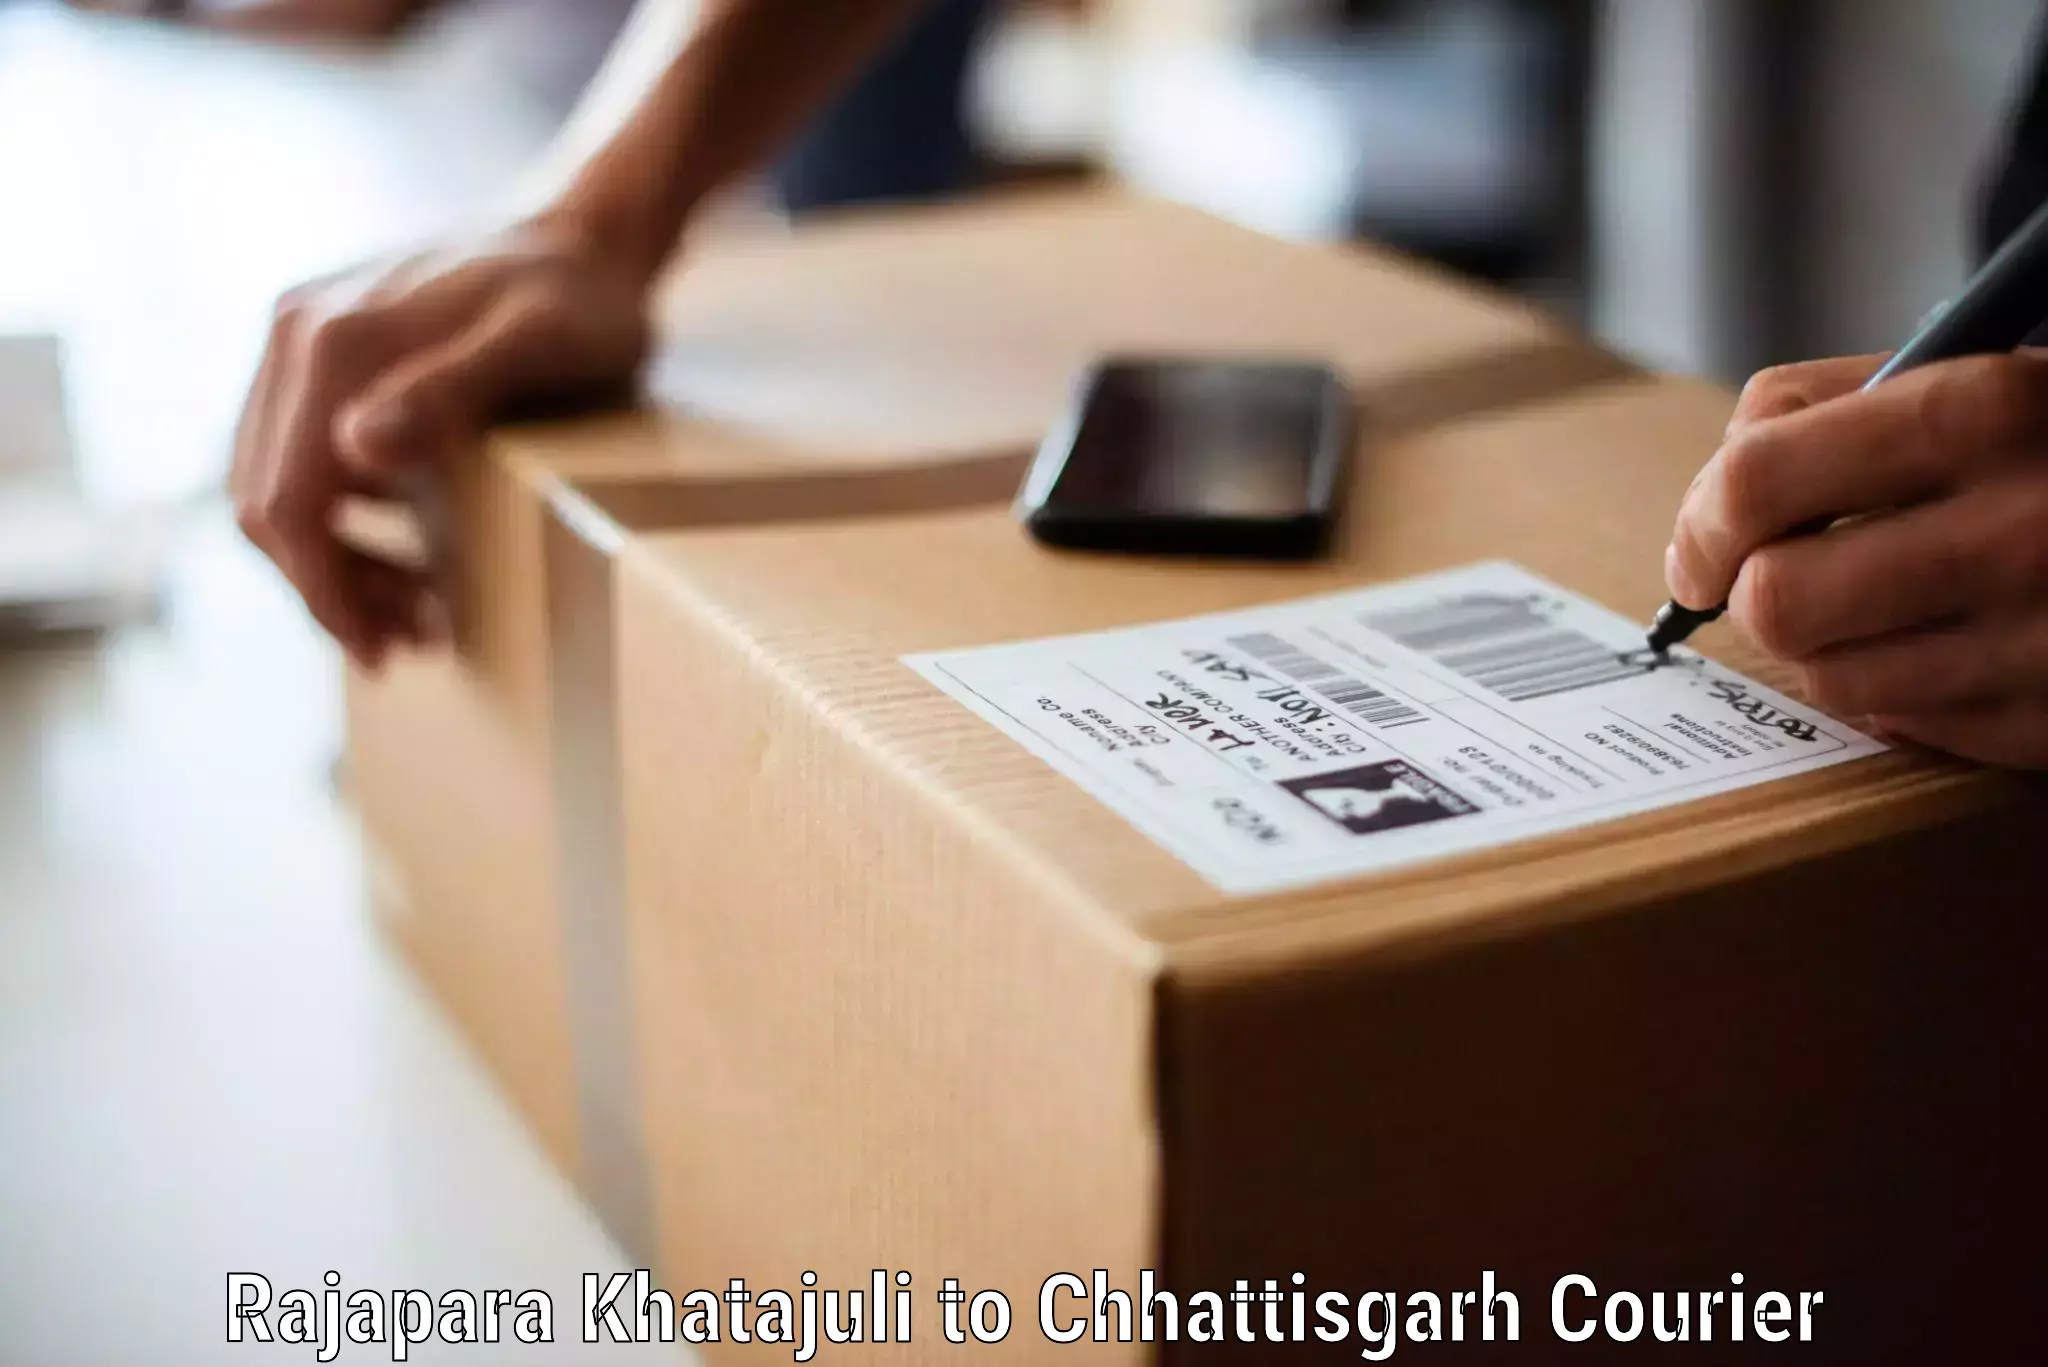 Furniture moving assistance Rajapara Khatajuli to Bijapur Chhattisgarh